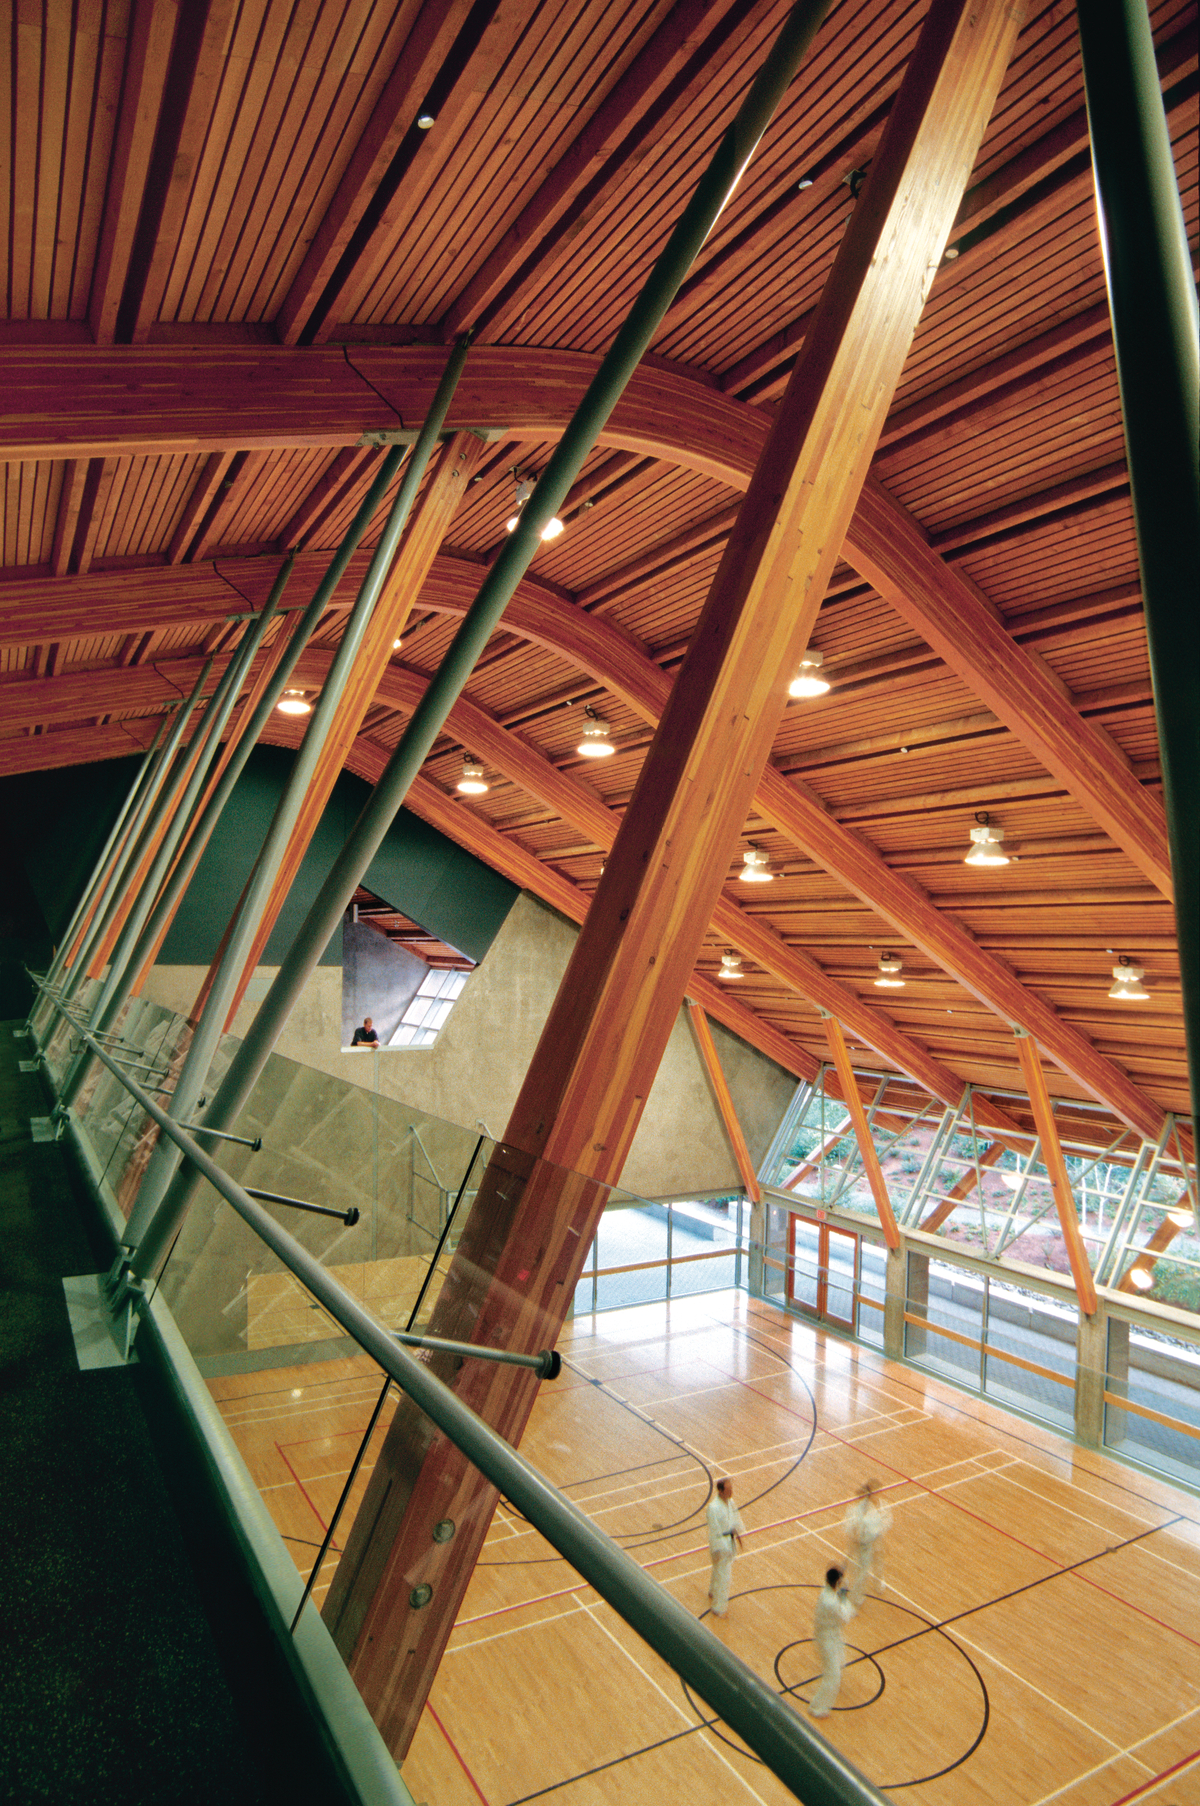 格伦伊格尔斯社区中心低层的室内日间景观，展示了四层的主体育馆，包括一个由预制木板组成的巨大棚状屋顶，由道格拉斯杉木胶合木梁支撑